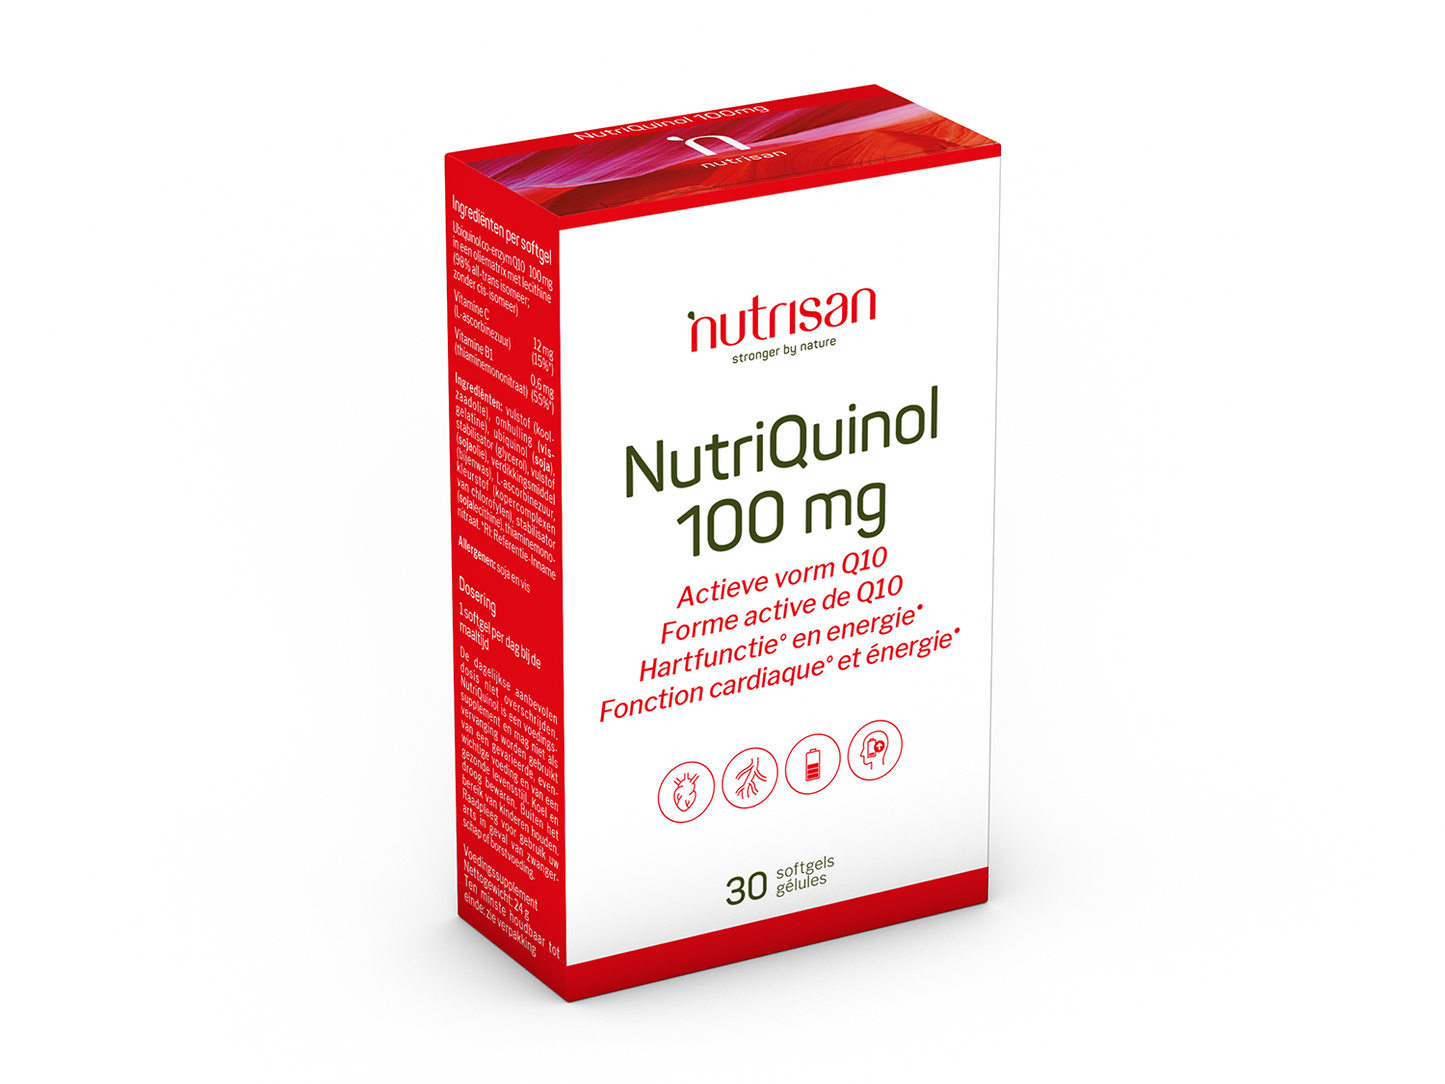 Nutrisan NutriQuinol 100 mg - Supplement voor hartfunctie en energie